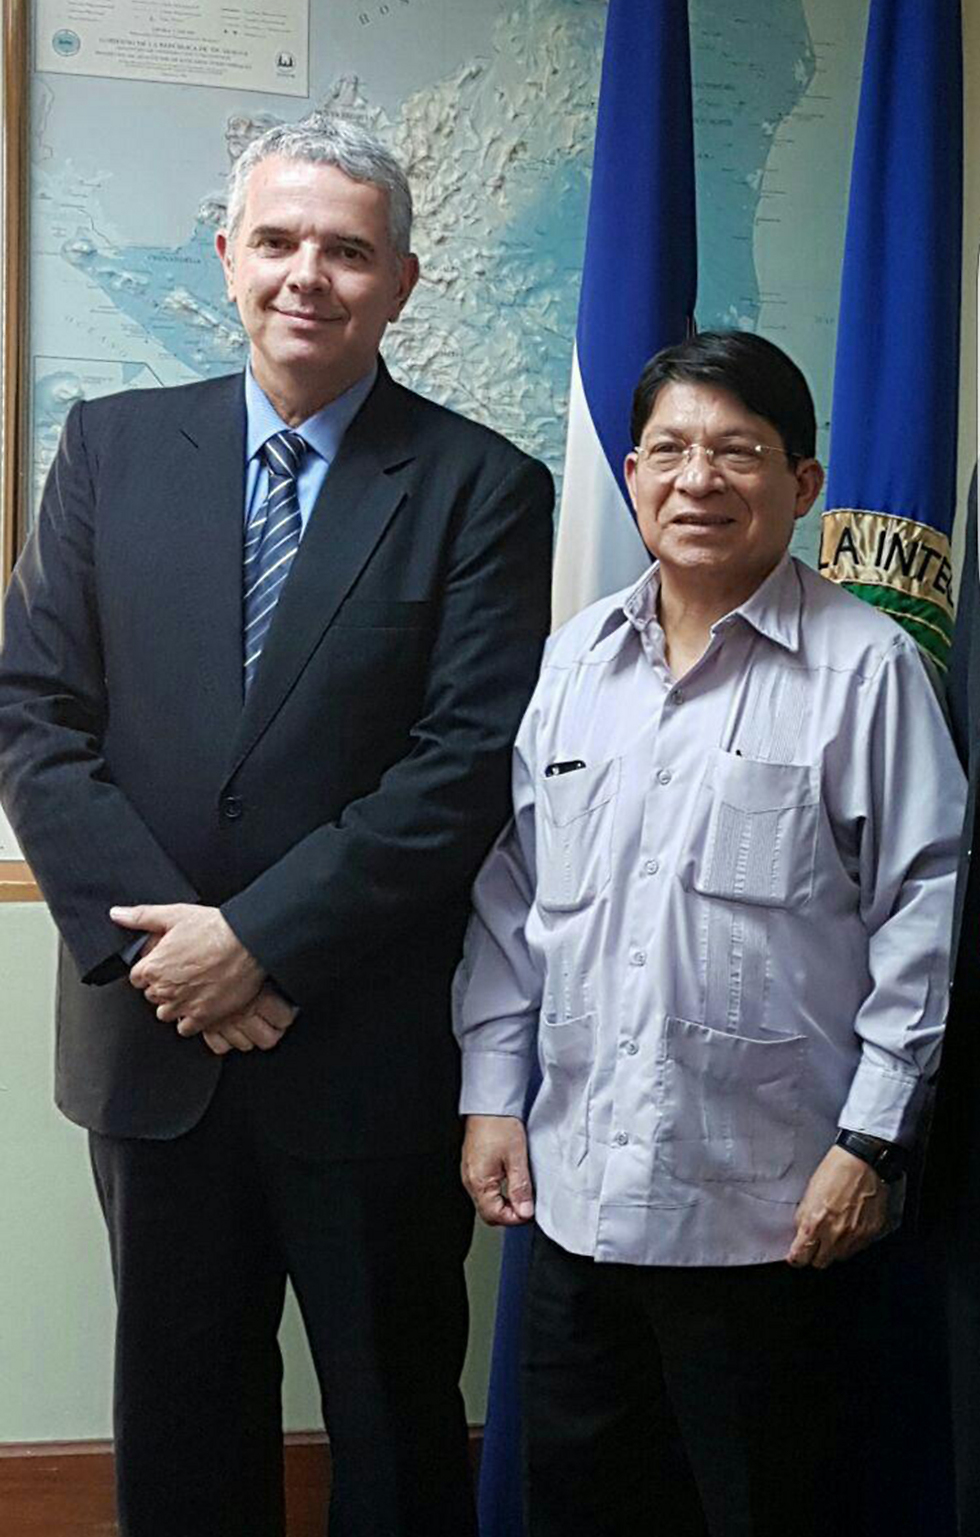 שר החוץ של ניקרגואה עם סמנכ"ל אמריקה הלטינית במשרד החוץ ()